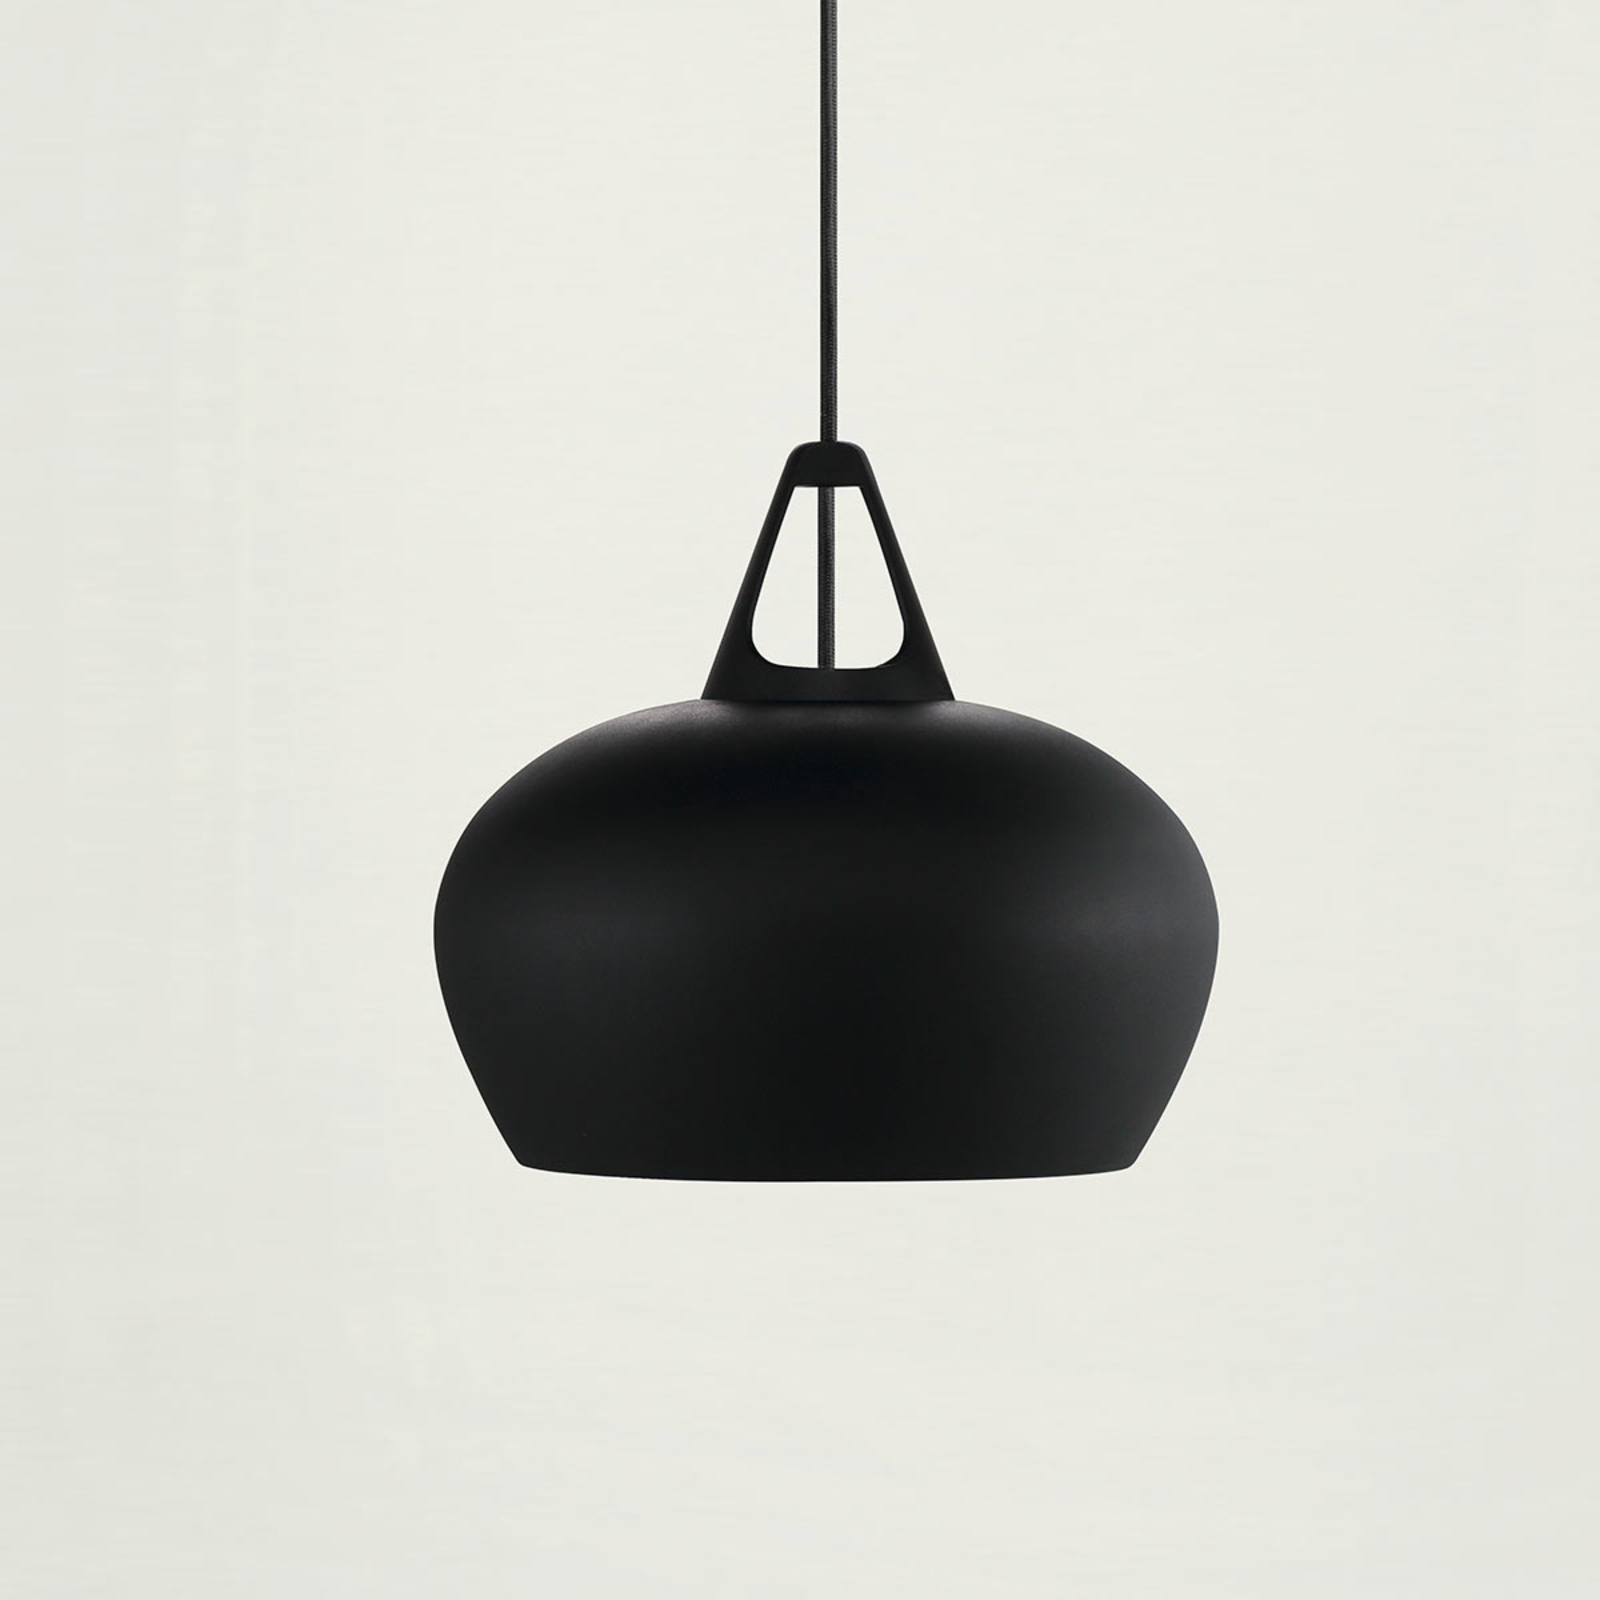 Effectrijke hanglamp Belly, Ø 29 cm